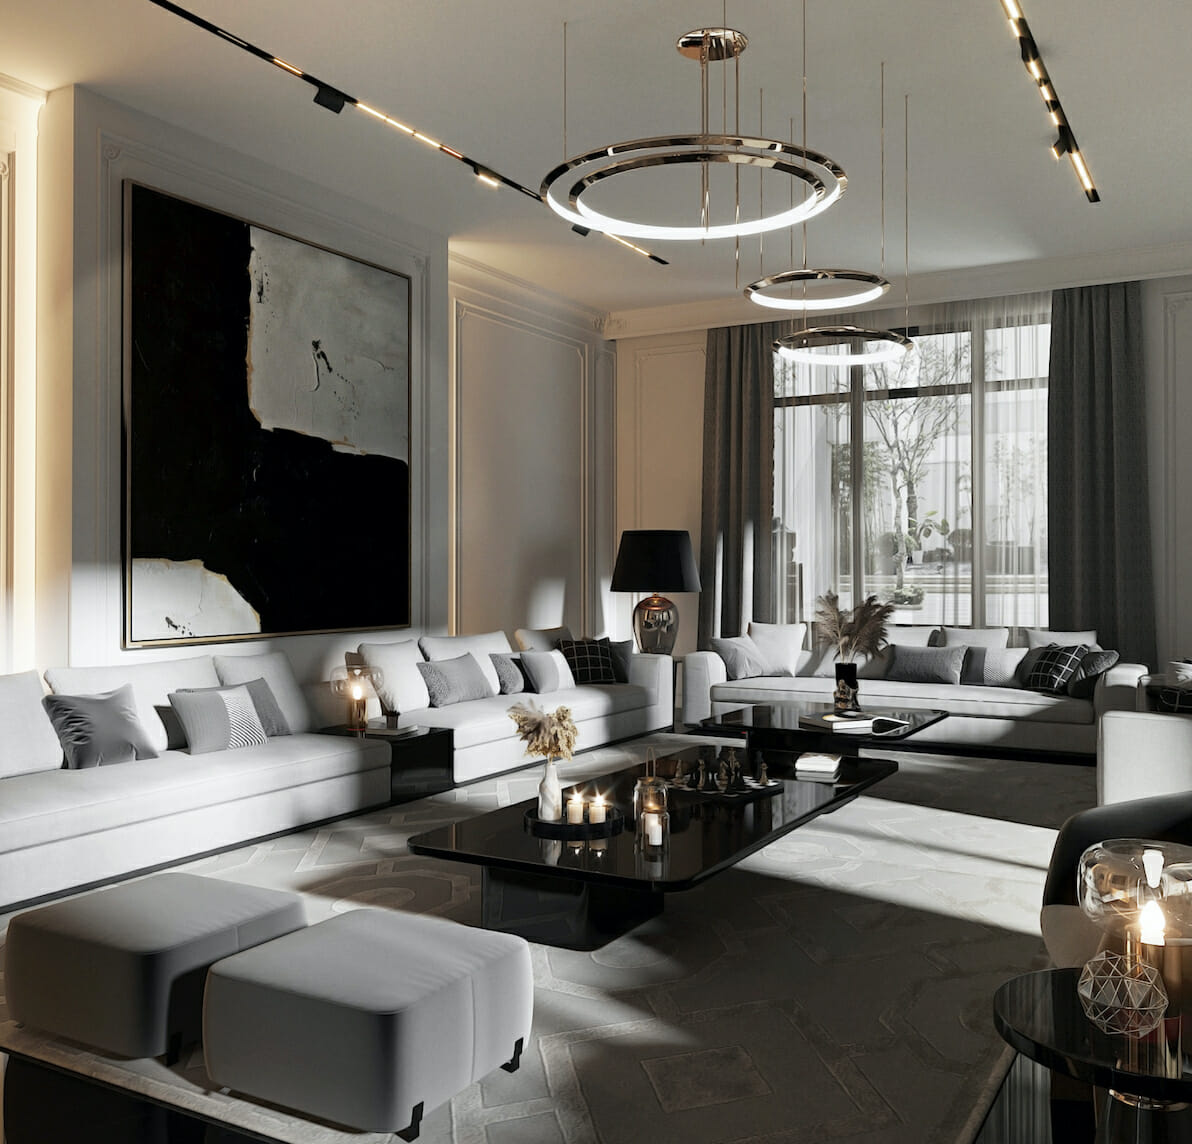 Contemporary house interior lighting design